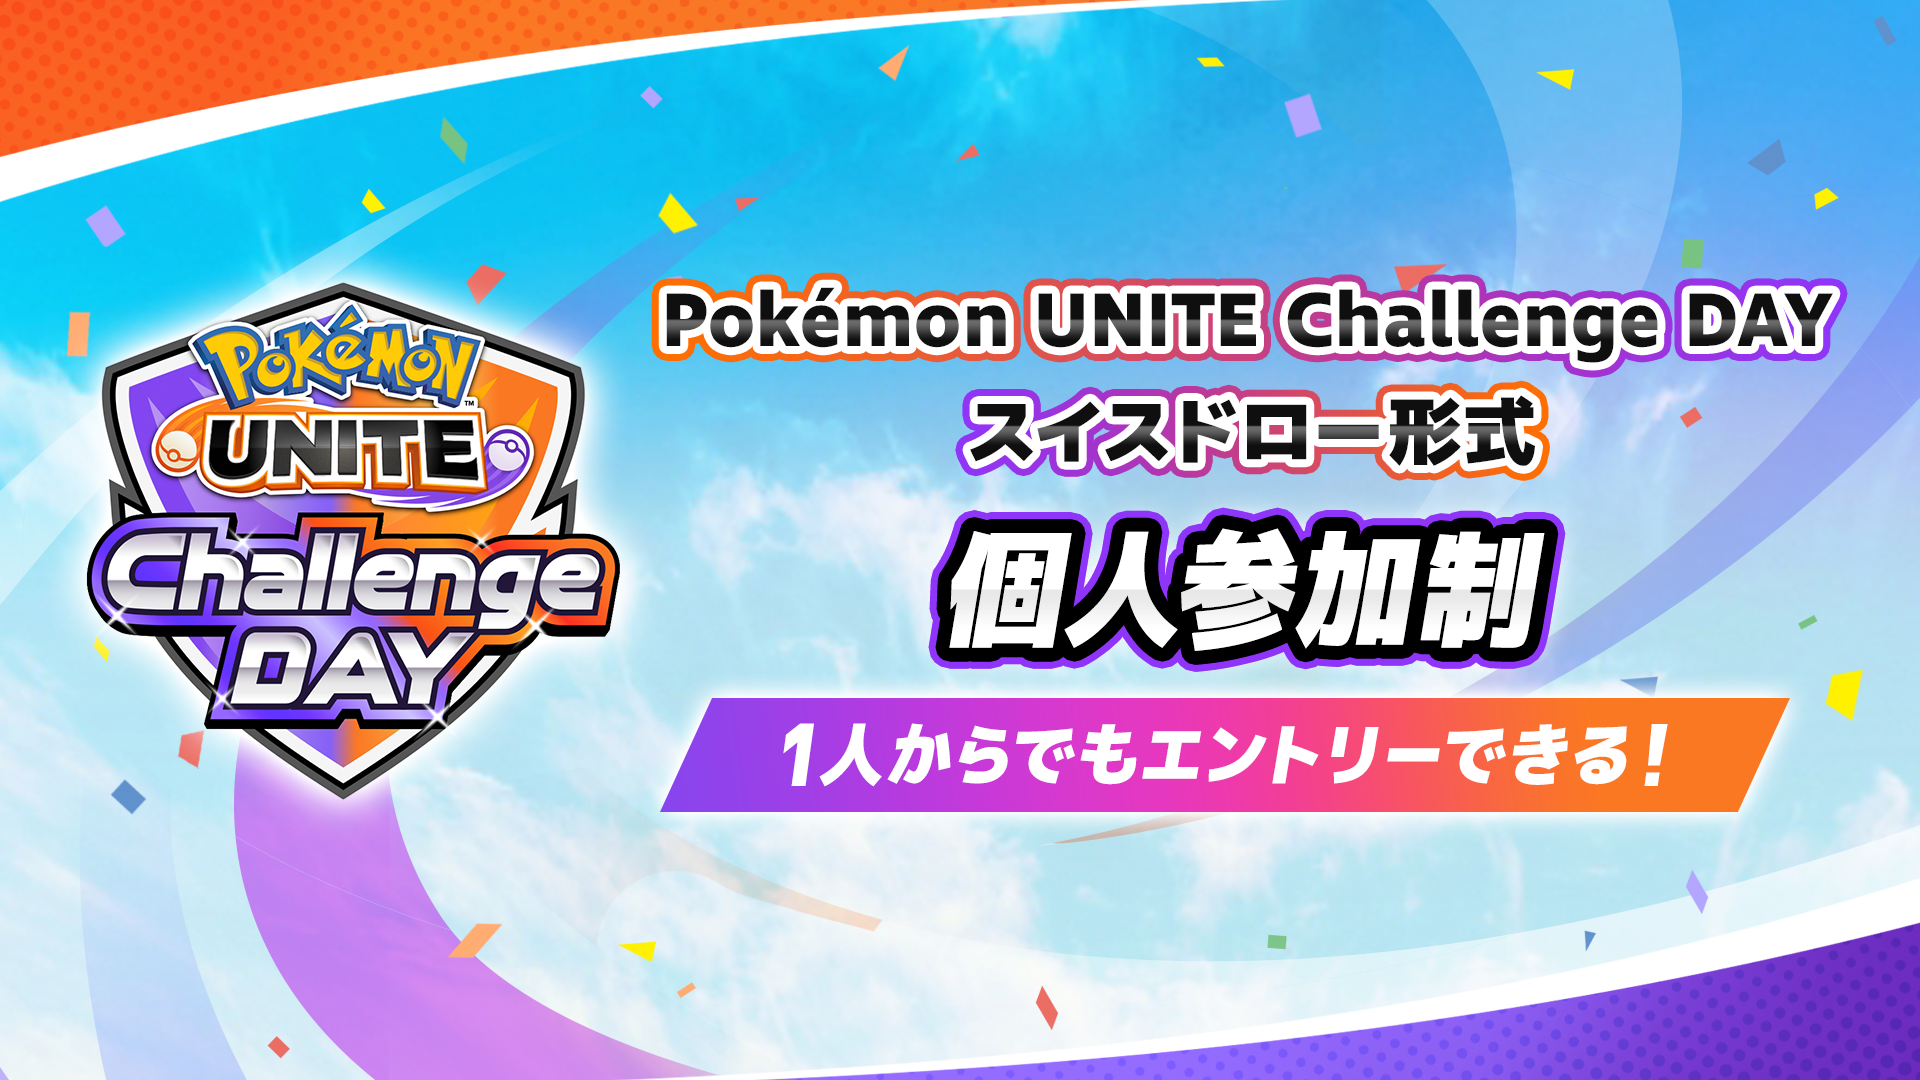 Pokémon UNITE Challenge DAY 09.24 個人参加制 スイスドロー形式